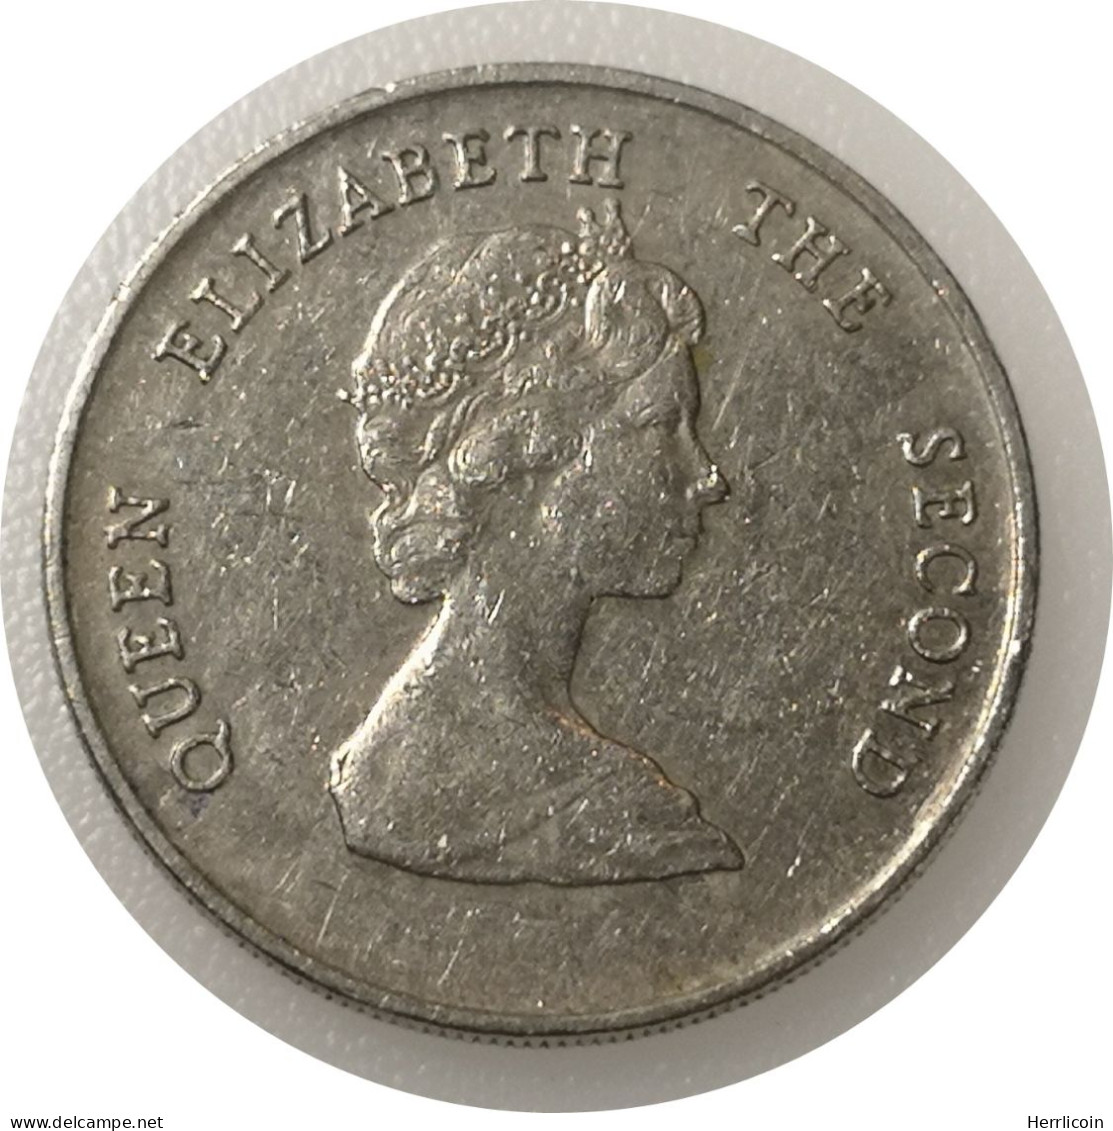 Monnaie Caraïbes - 1981 - 25 Cents Elizabeth II 2e Effigie - Territoires Britanniques Des Caraïbes